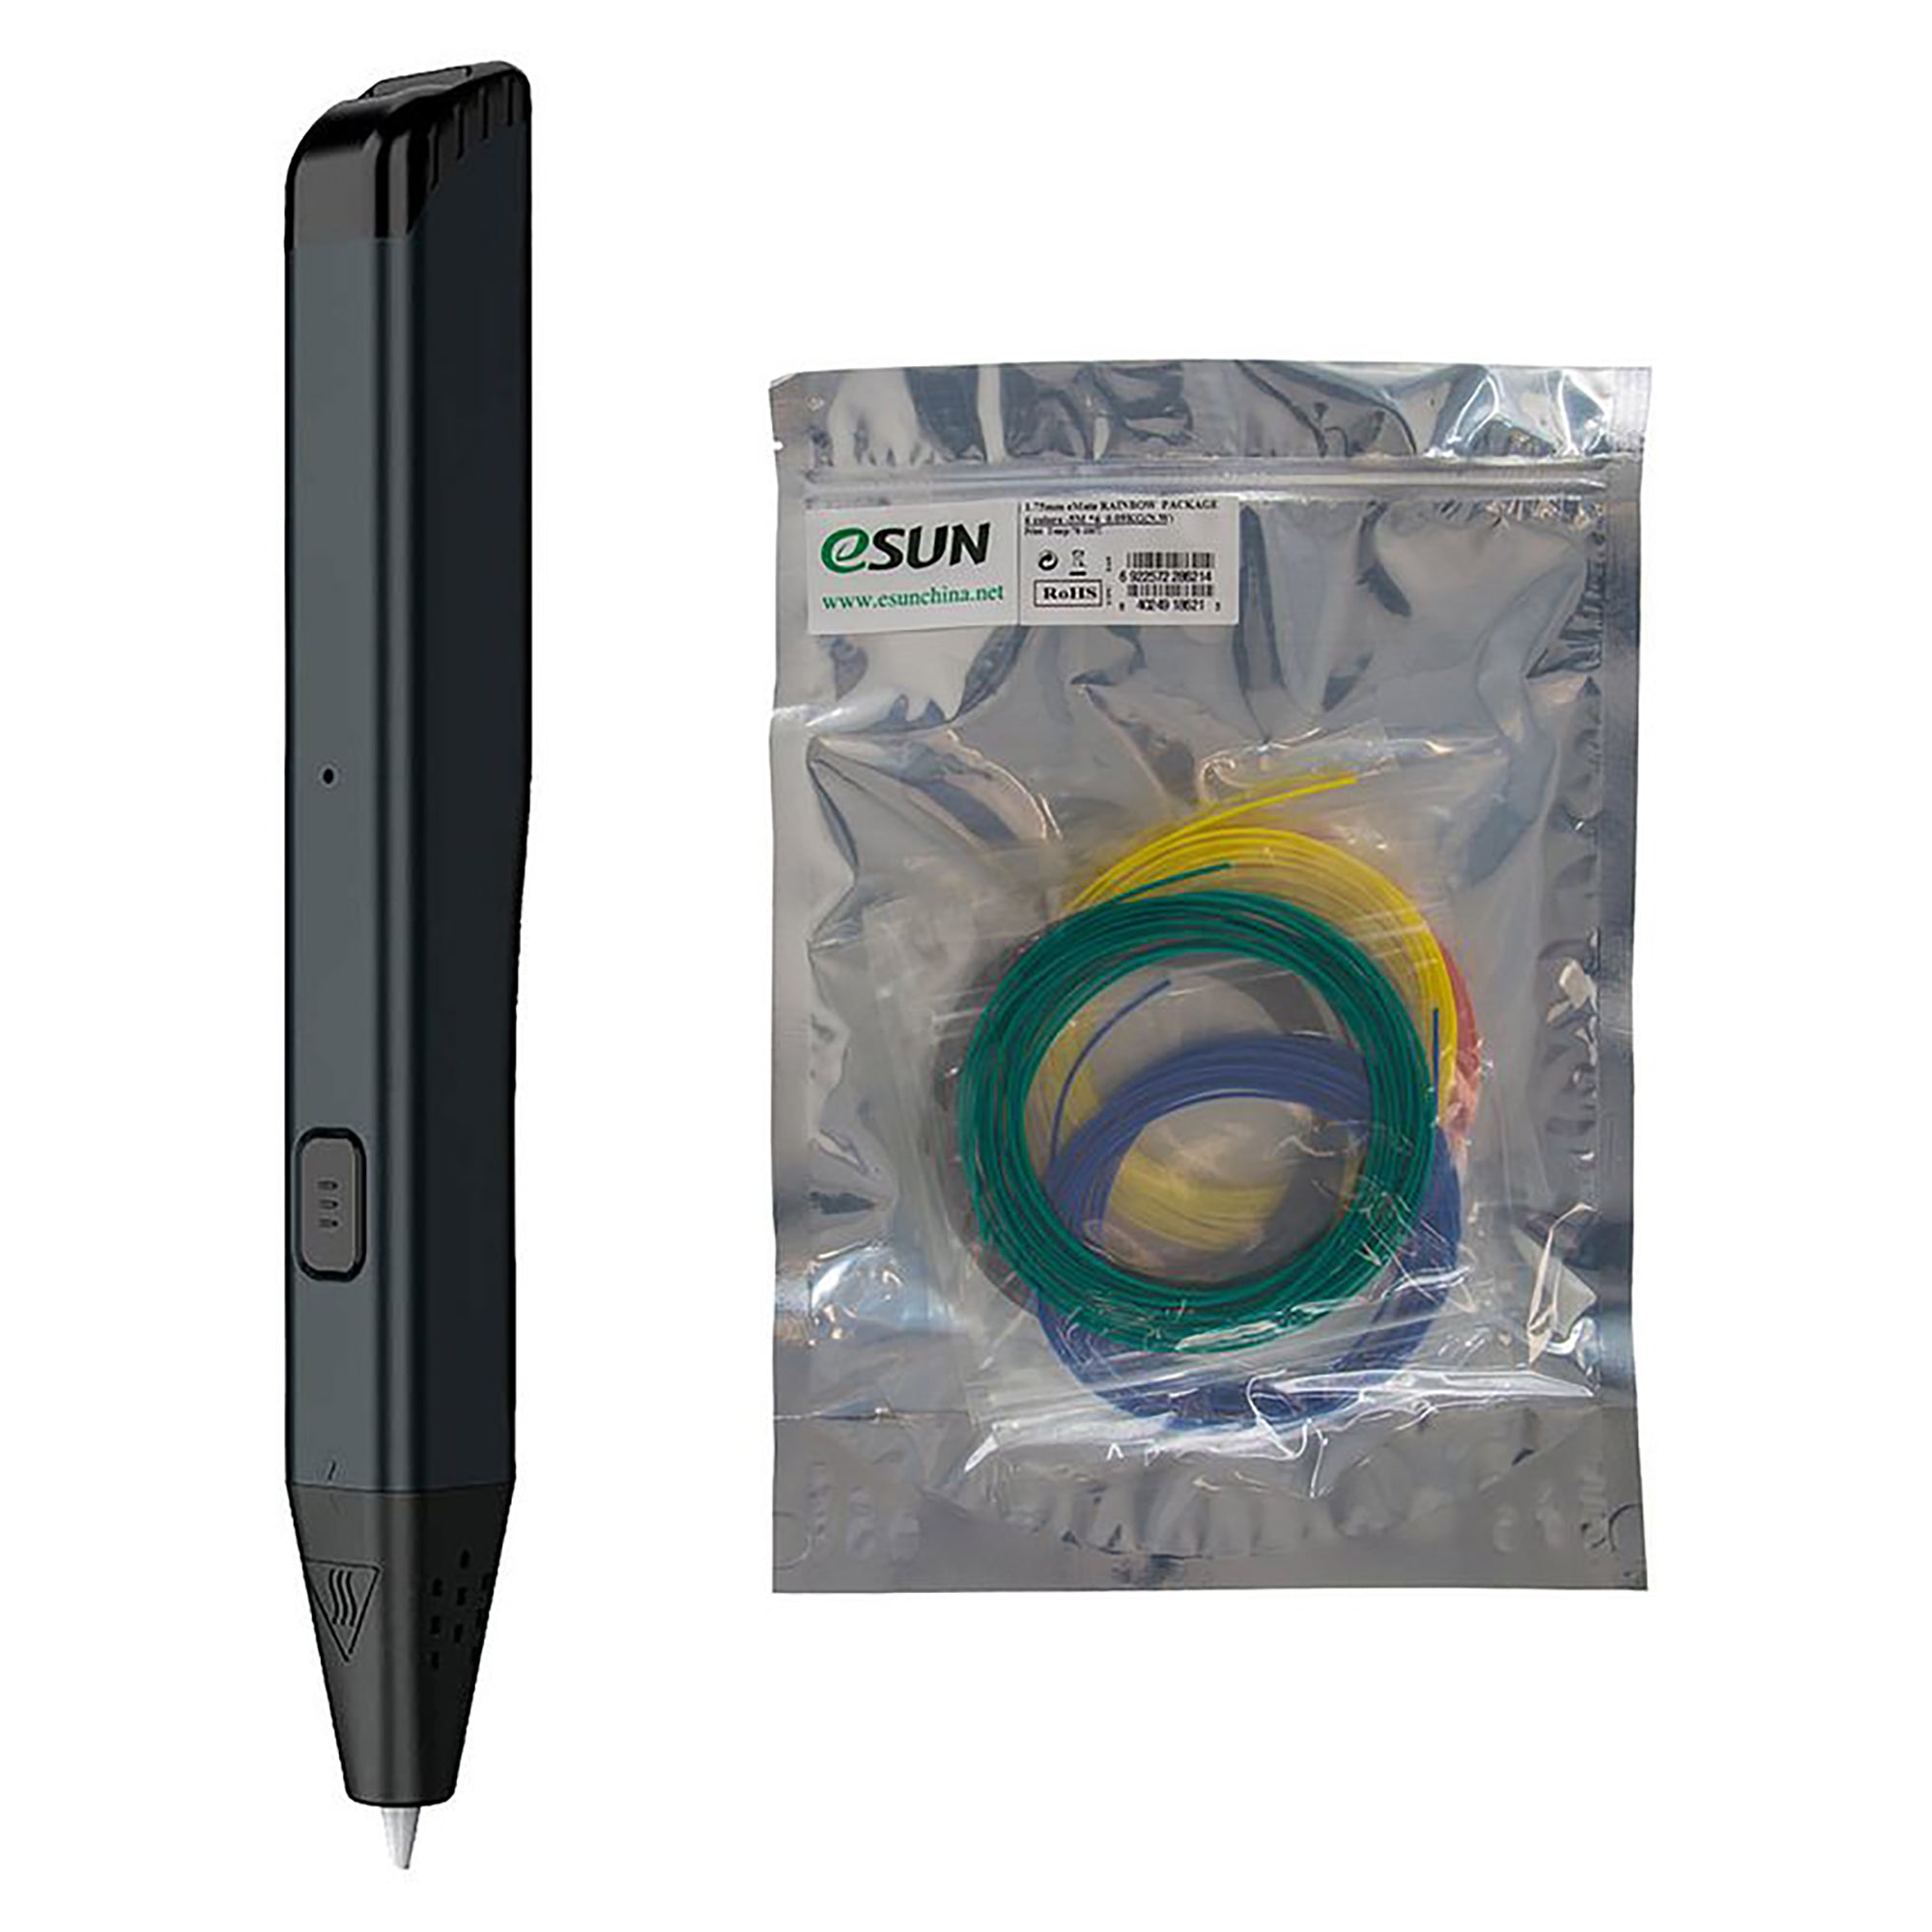 Shenzhen Industrial iSun LTP 4.0 3D Pen + 6 Colour eMate Pack